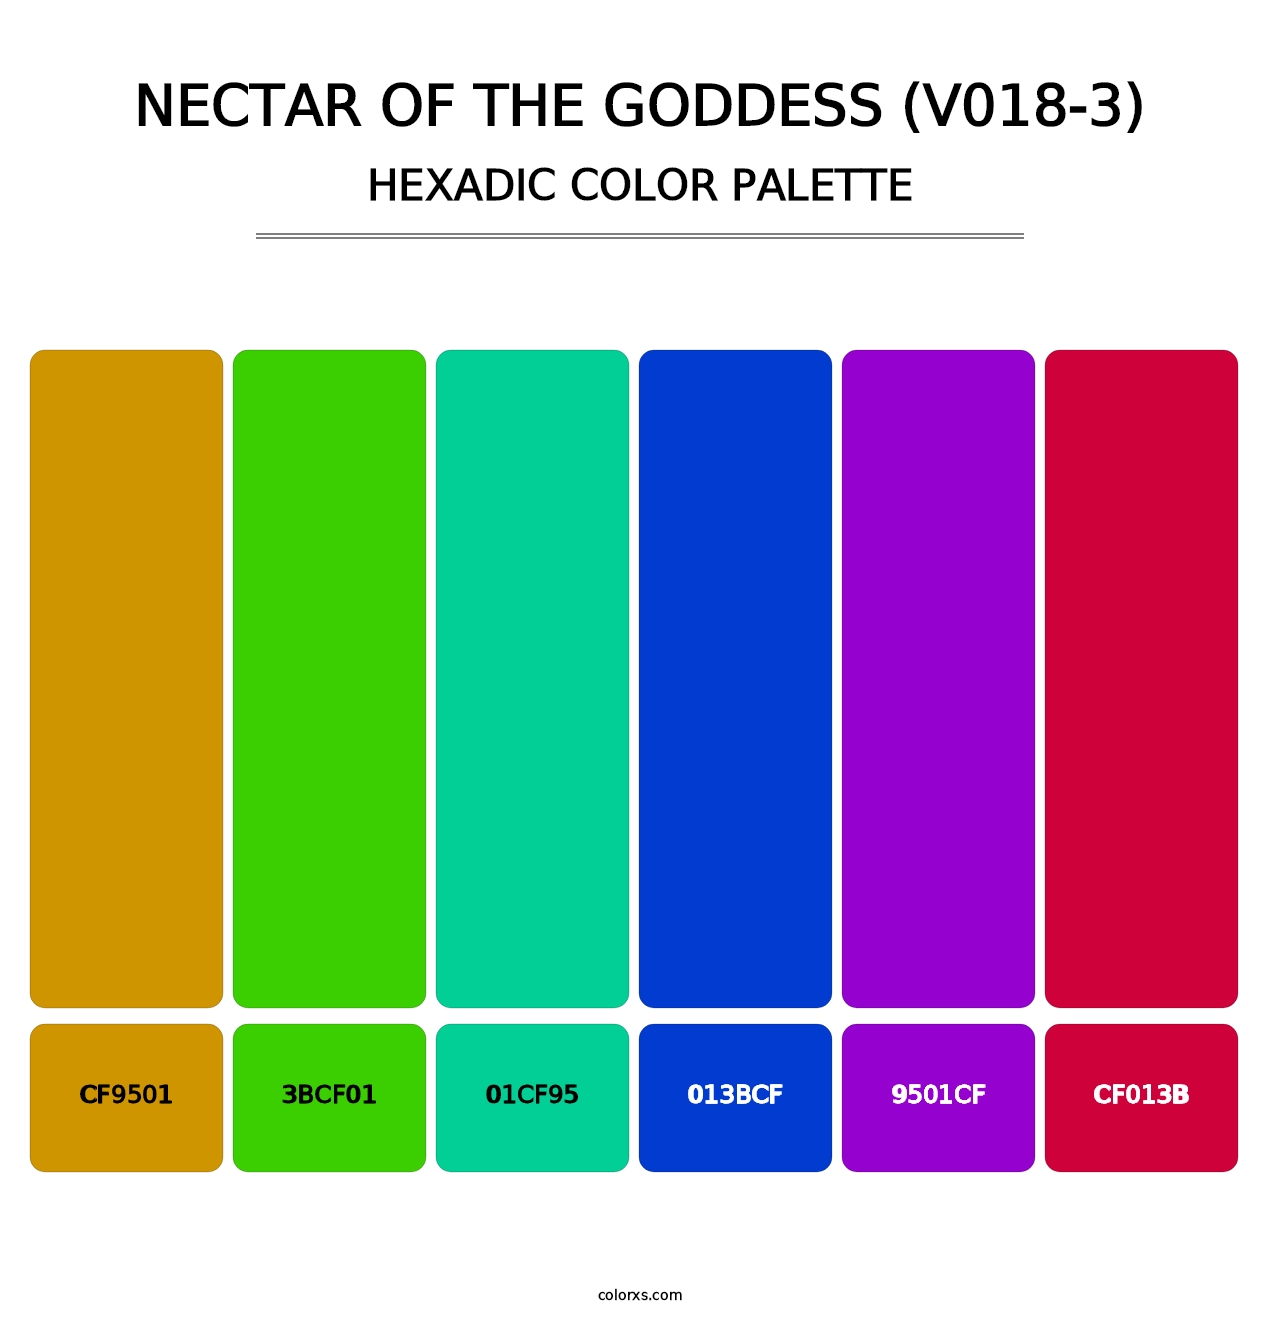 Nectar of the Goddess (V018-3) - Hexadic Color Palette